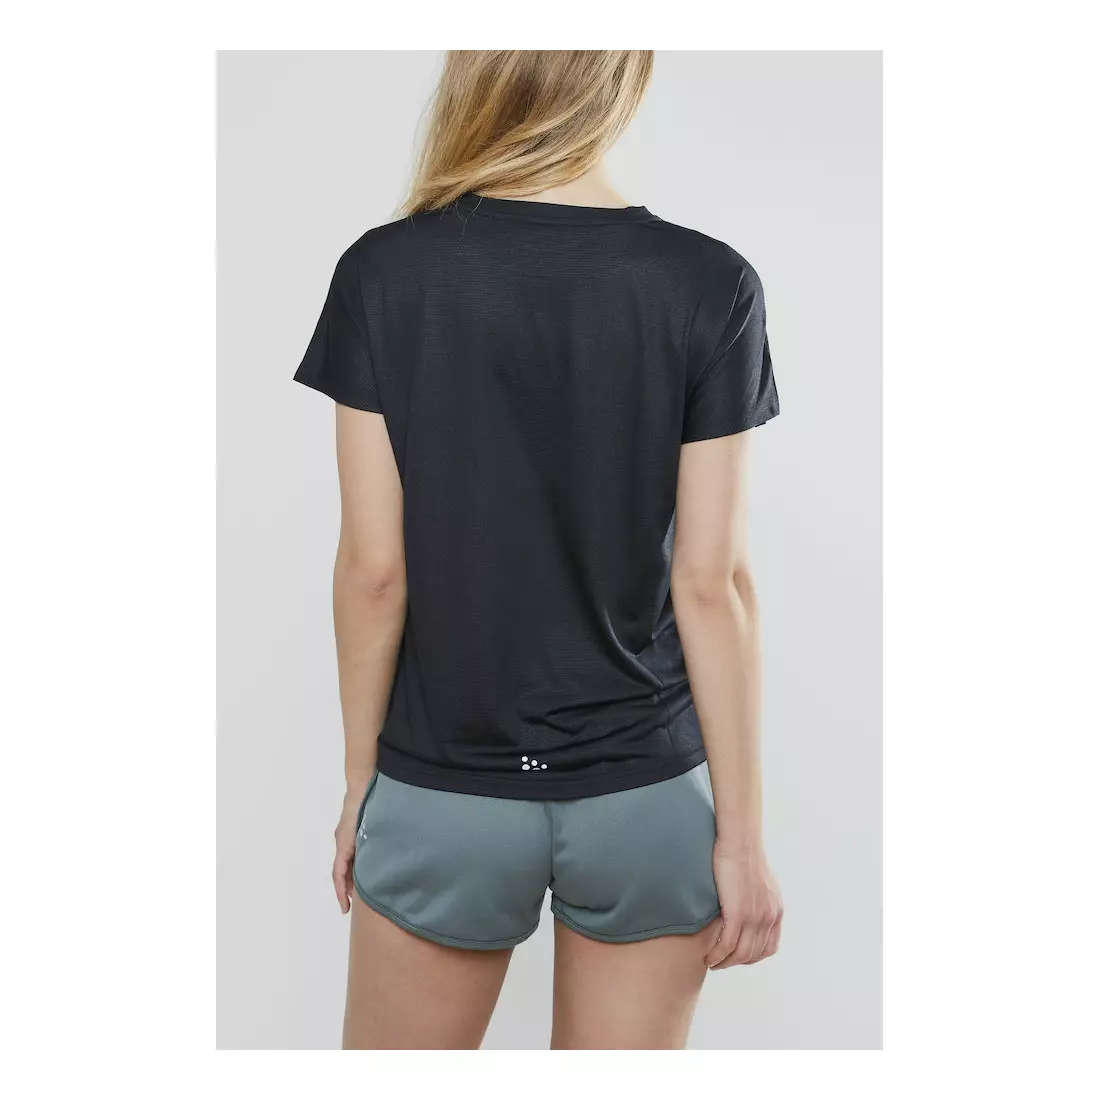 CRAFT EAZE MESH women's sports / running T-shirt black 1907019-999000